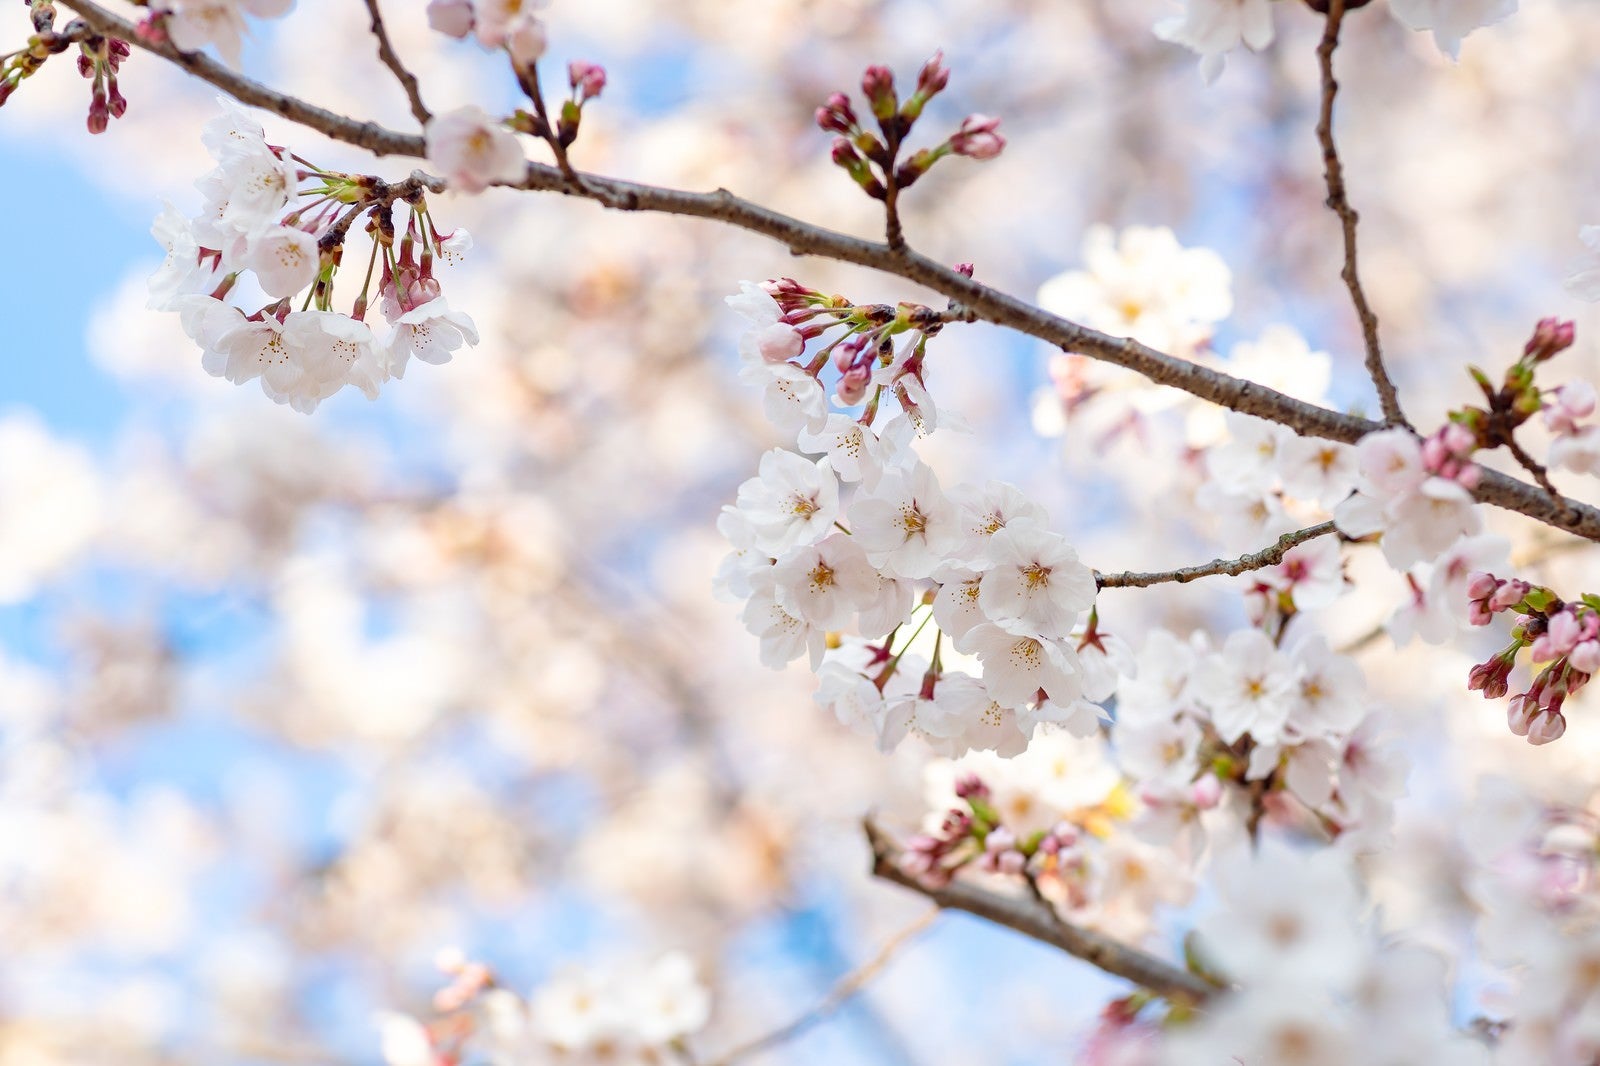 「つぼみから次々と開花する桜」の写真